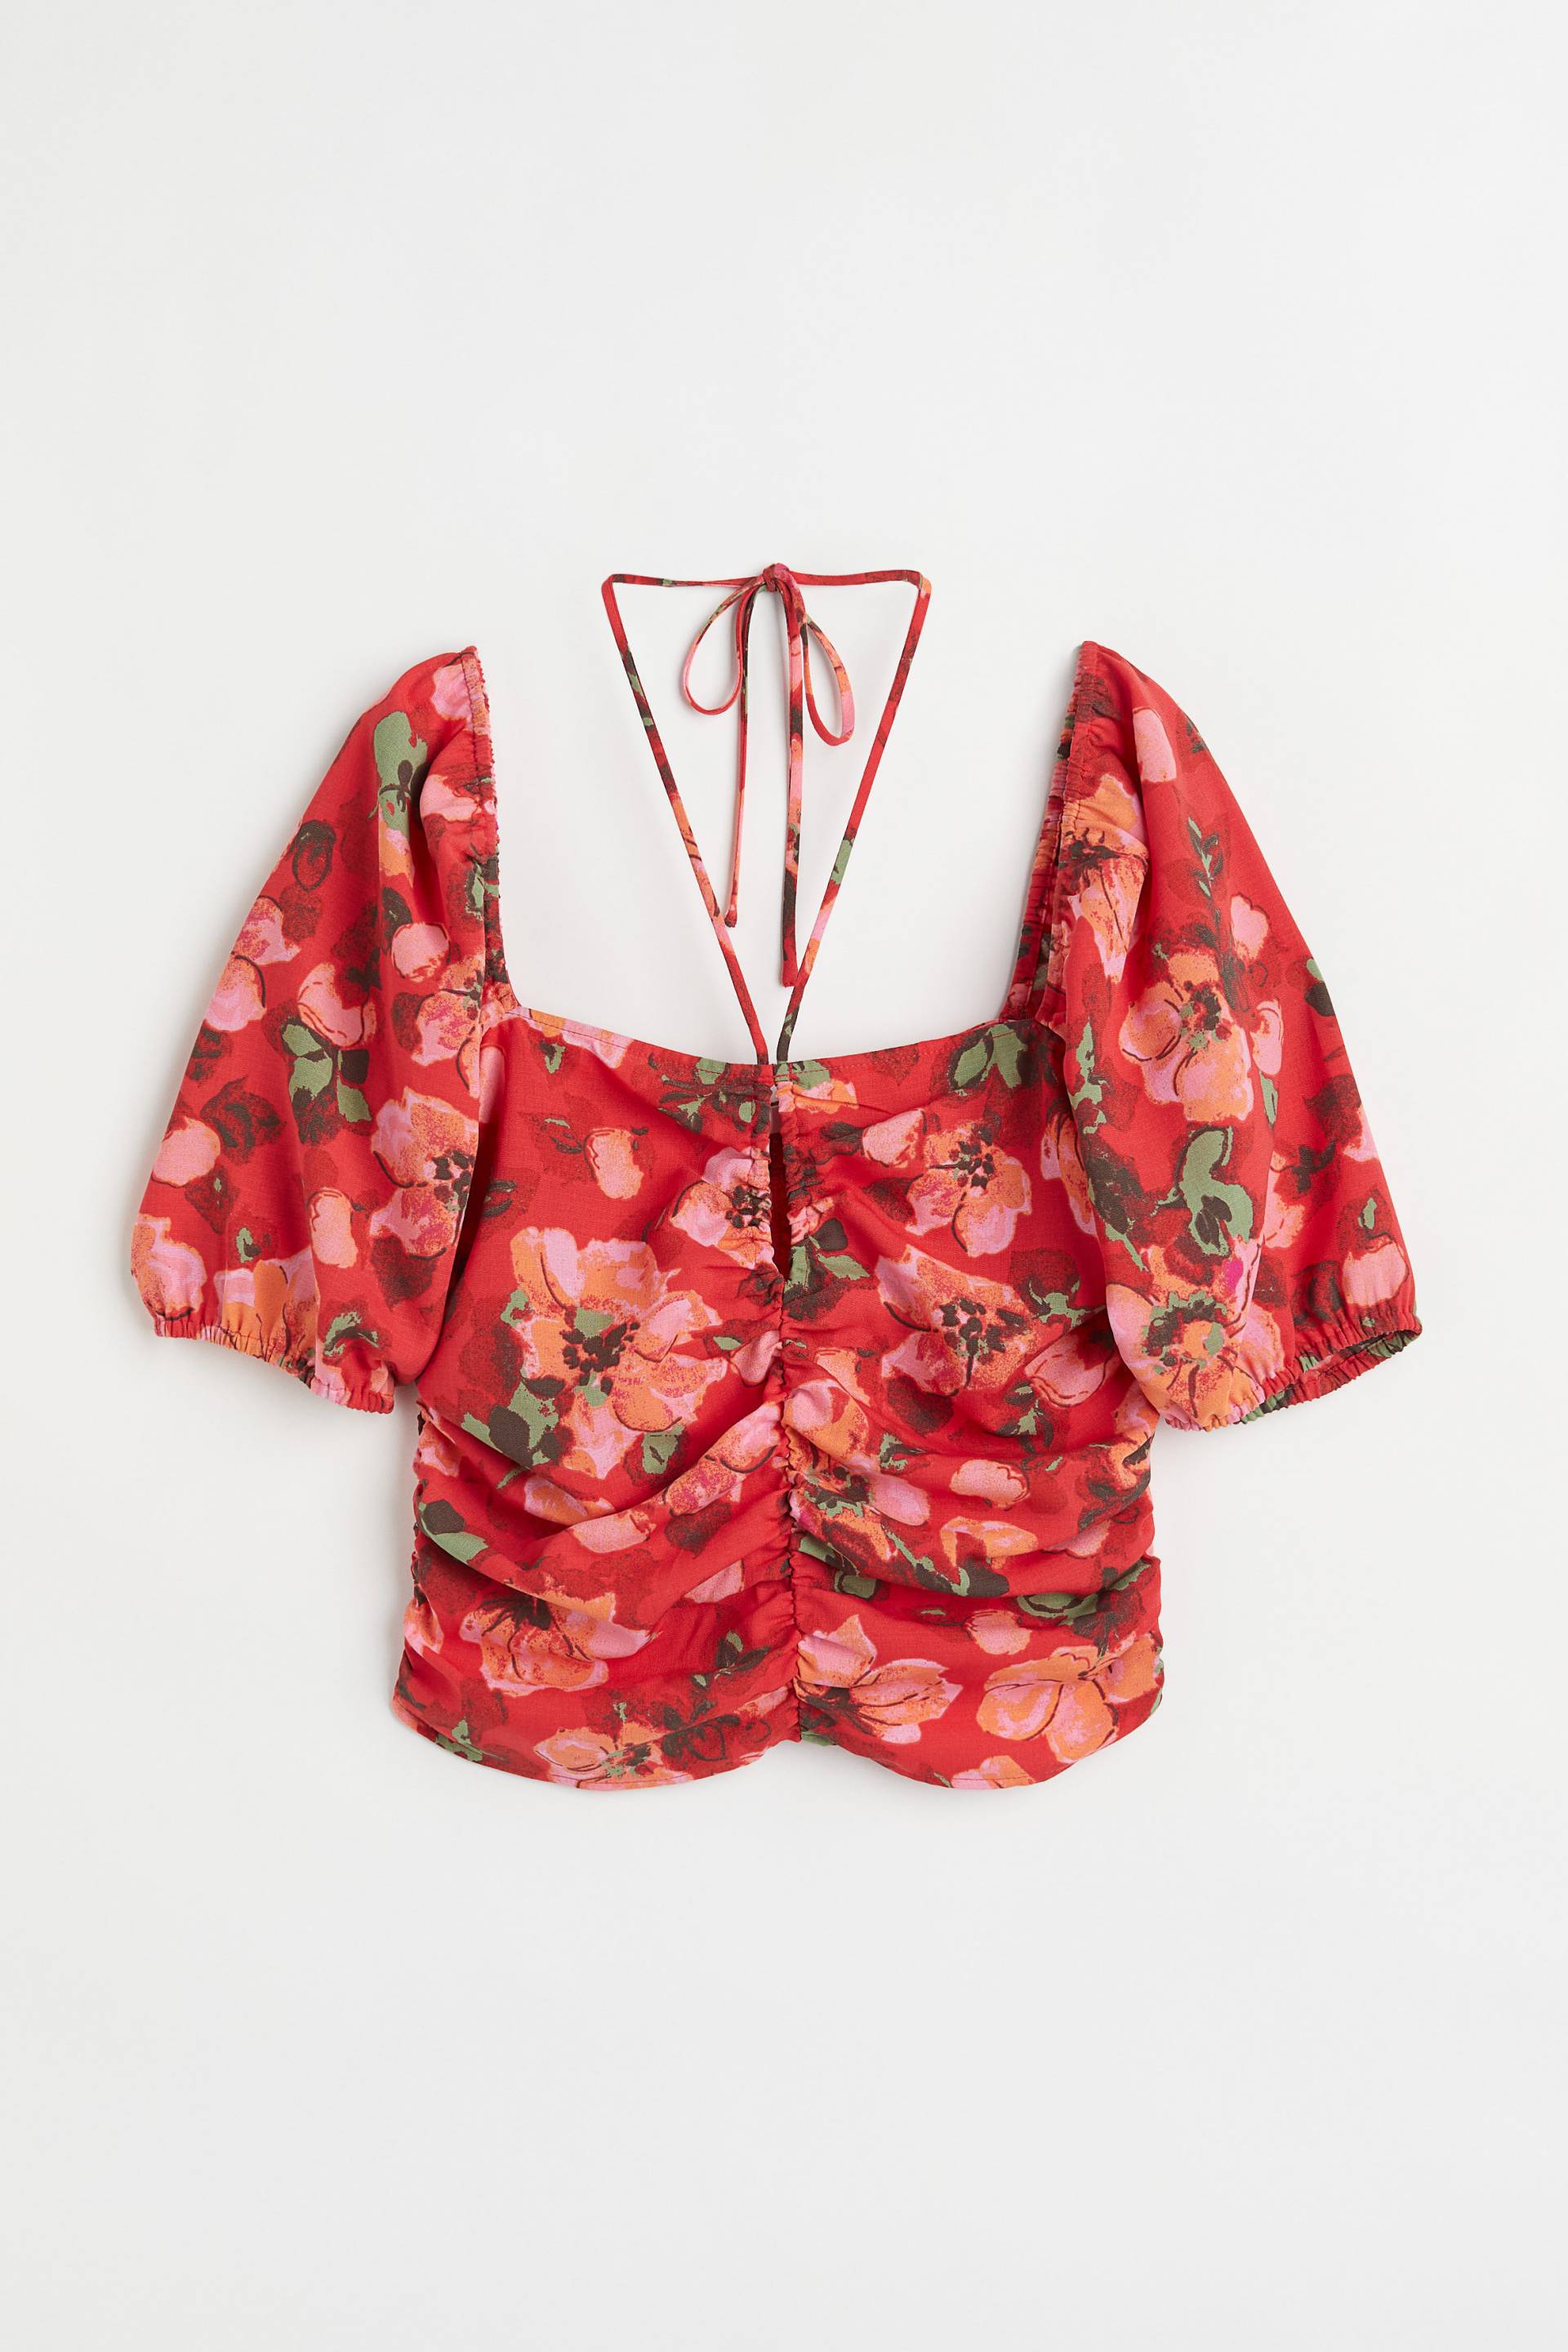 H&M Cropped Bluse Rot/Geblümt, Blusen in Größe XL. Farbe: Red/floral von H&M